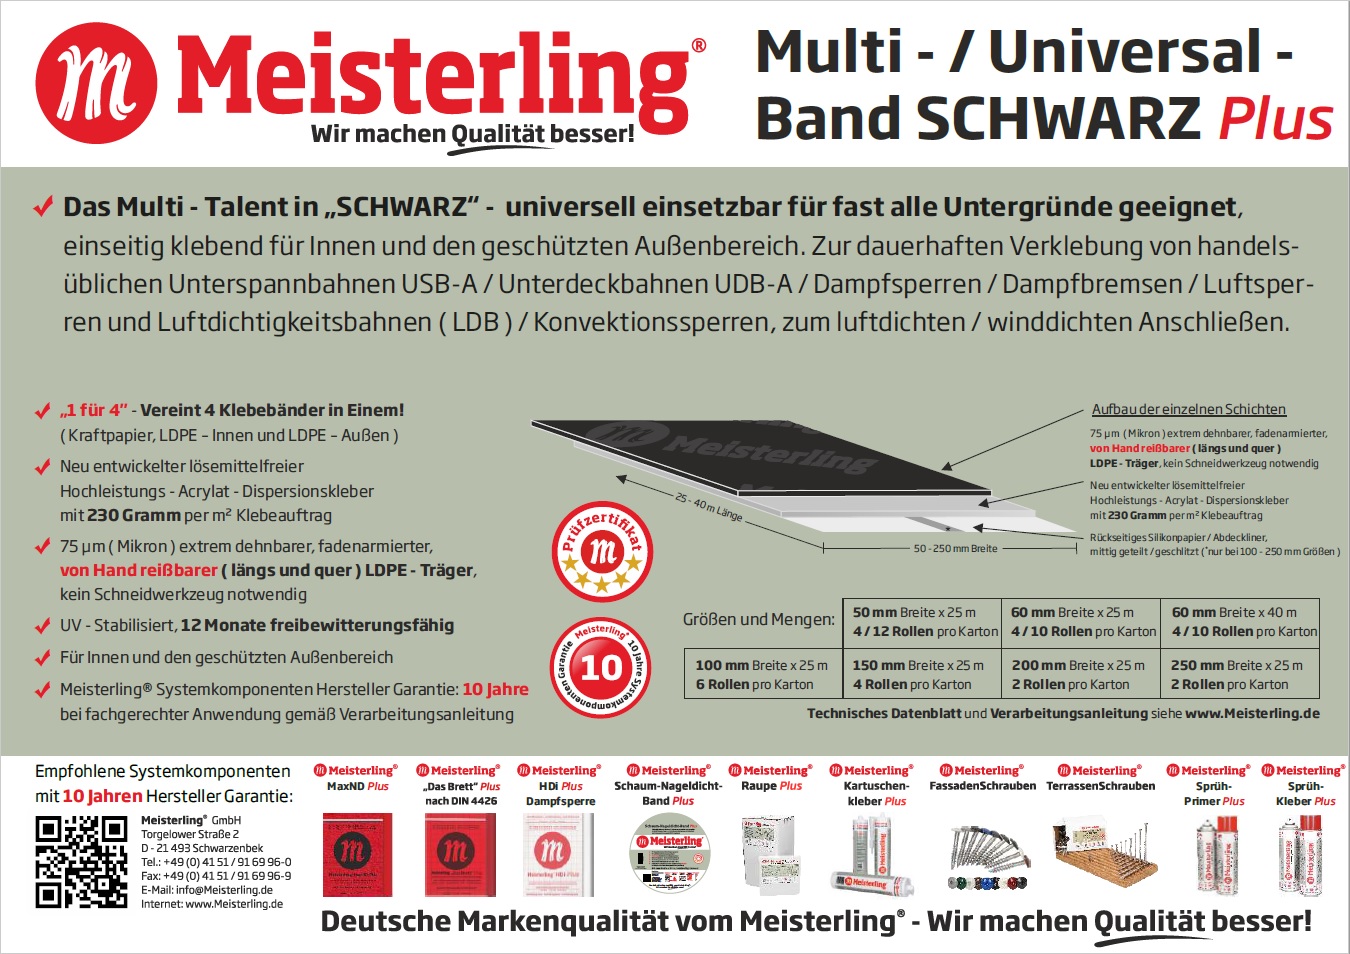 Technische Daten Meisterling® Universal-Band / Multi-Band SCHWARZ PLUS alle Größen